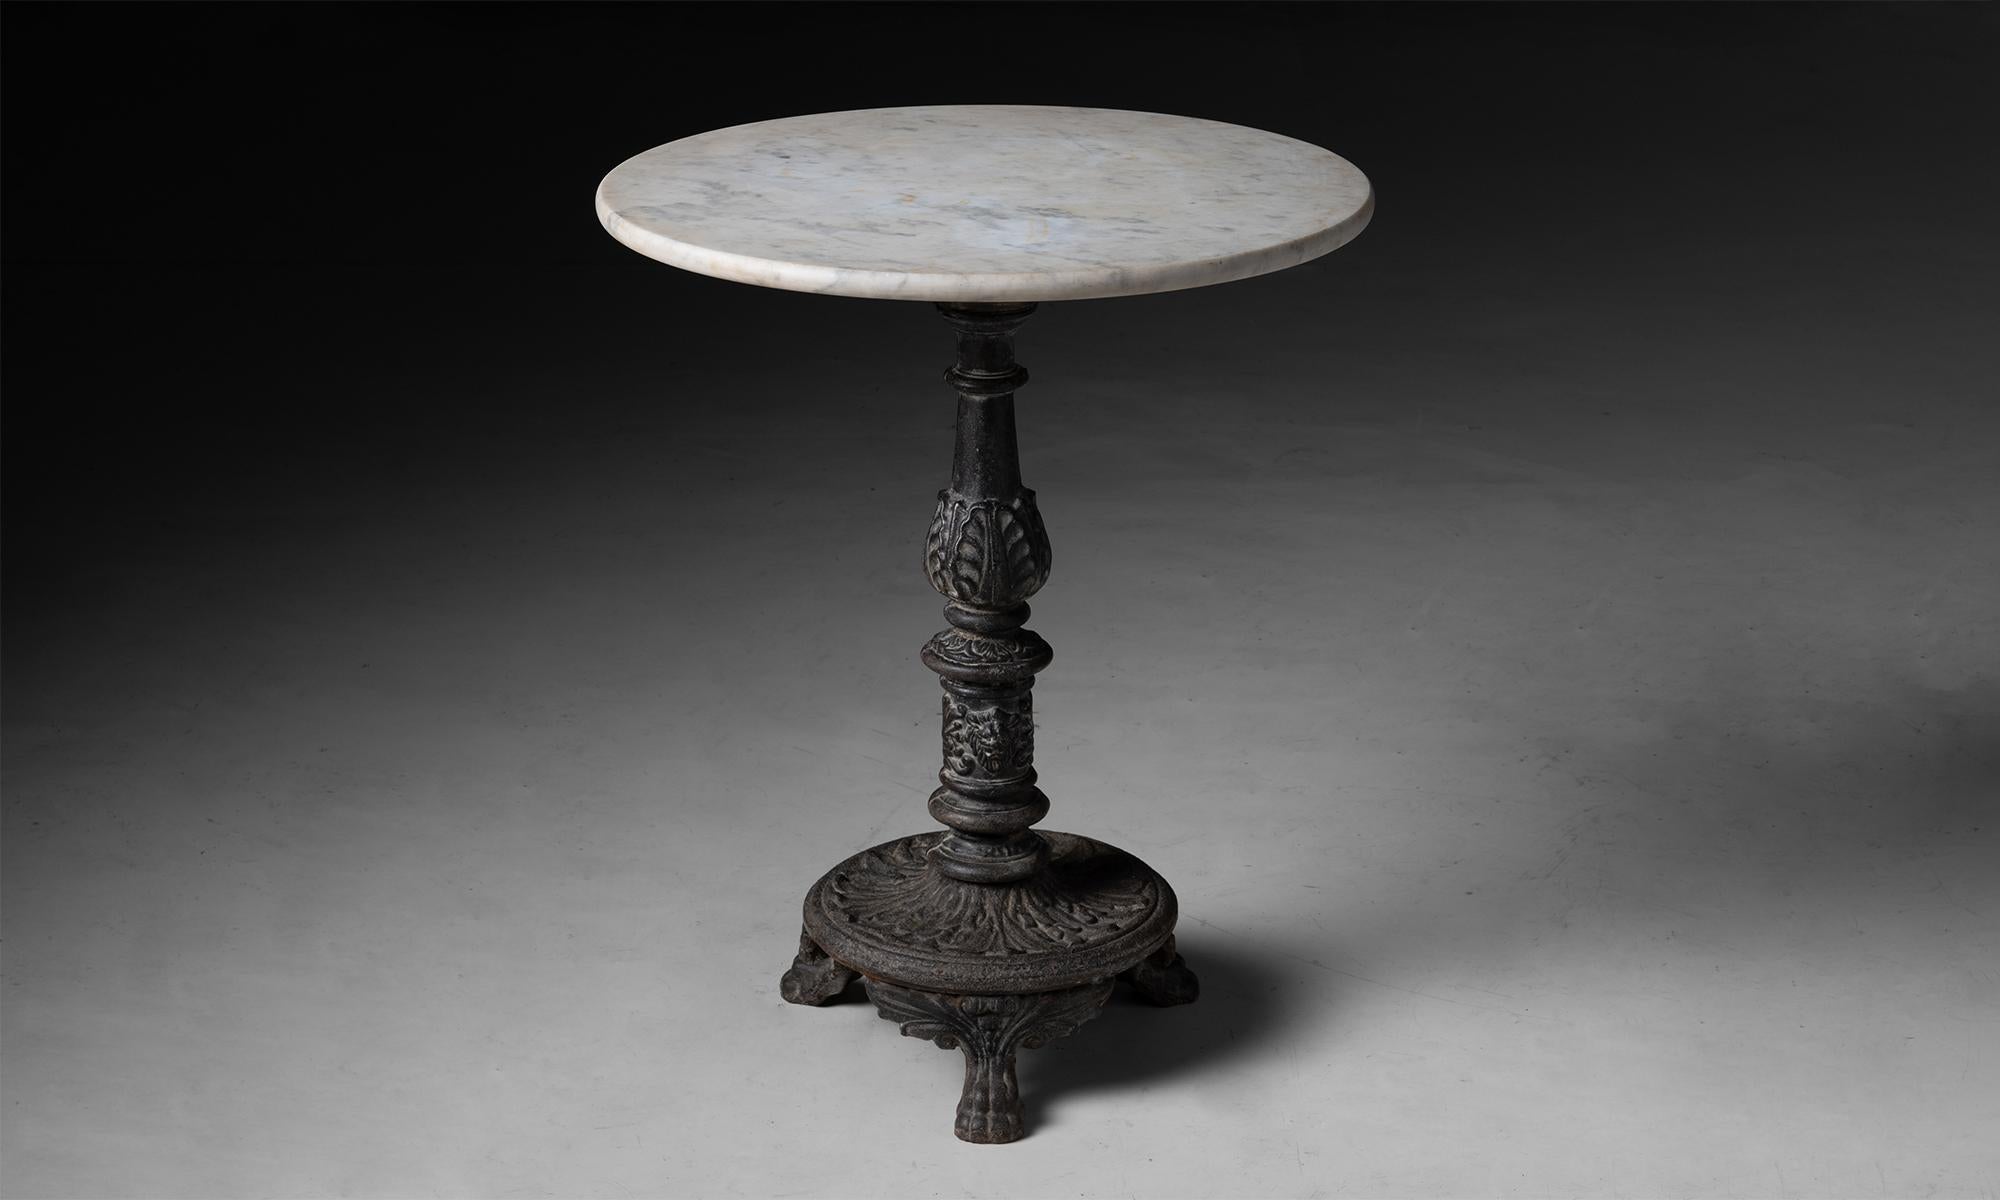 Garden Table

France circa 1870

Circular marble top on intricate cast iron base.

Measures 23.75”dia x 28.75”h
